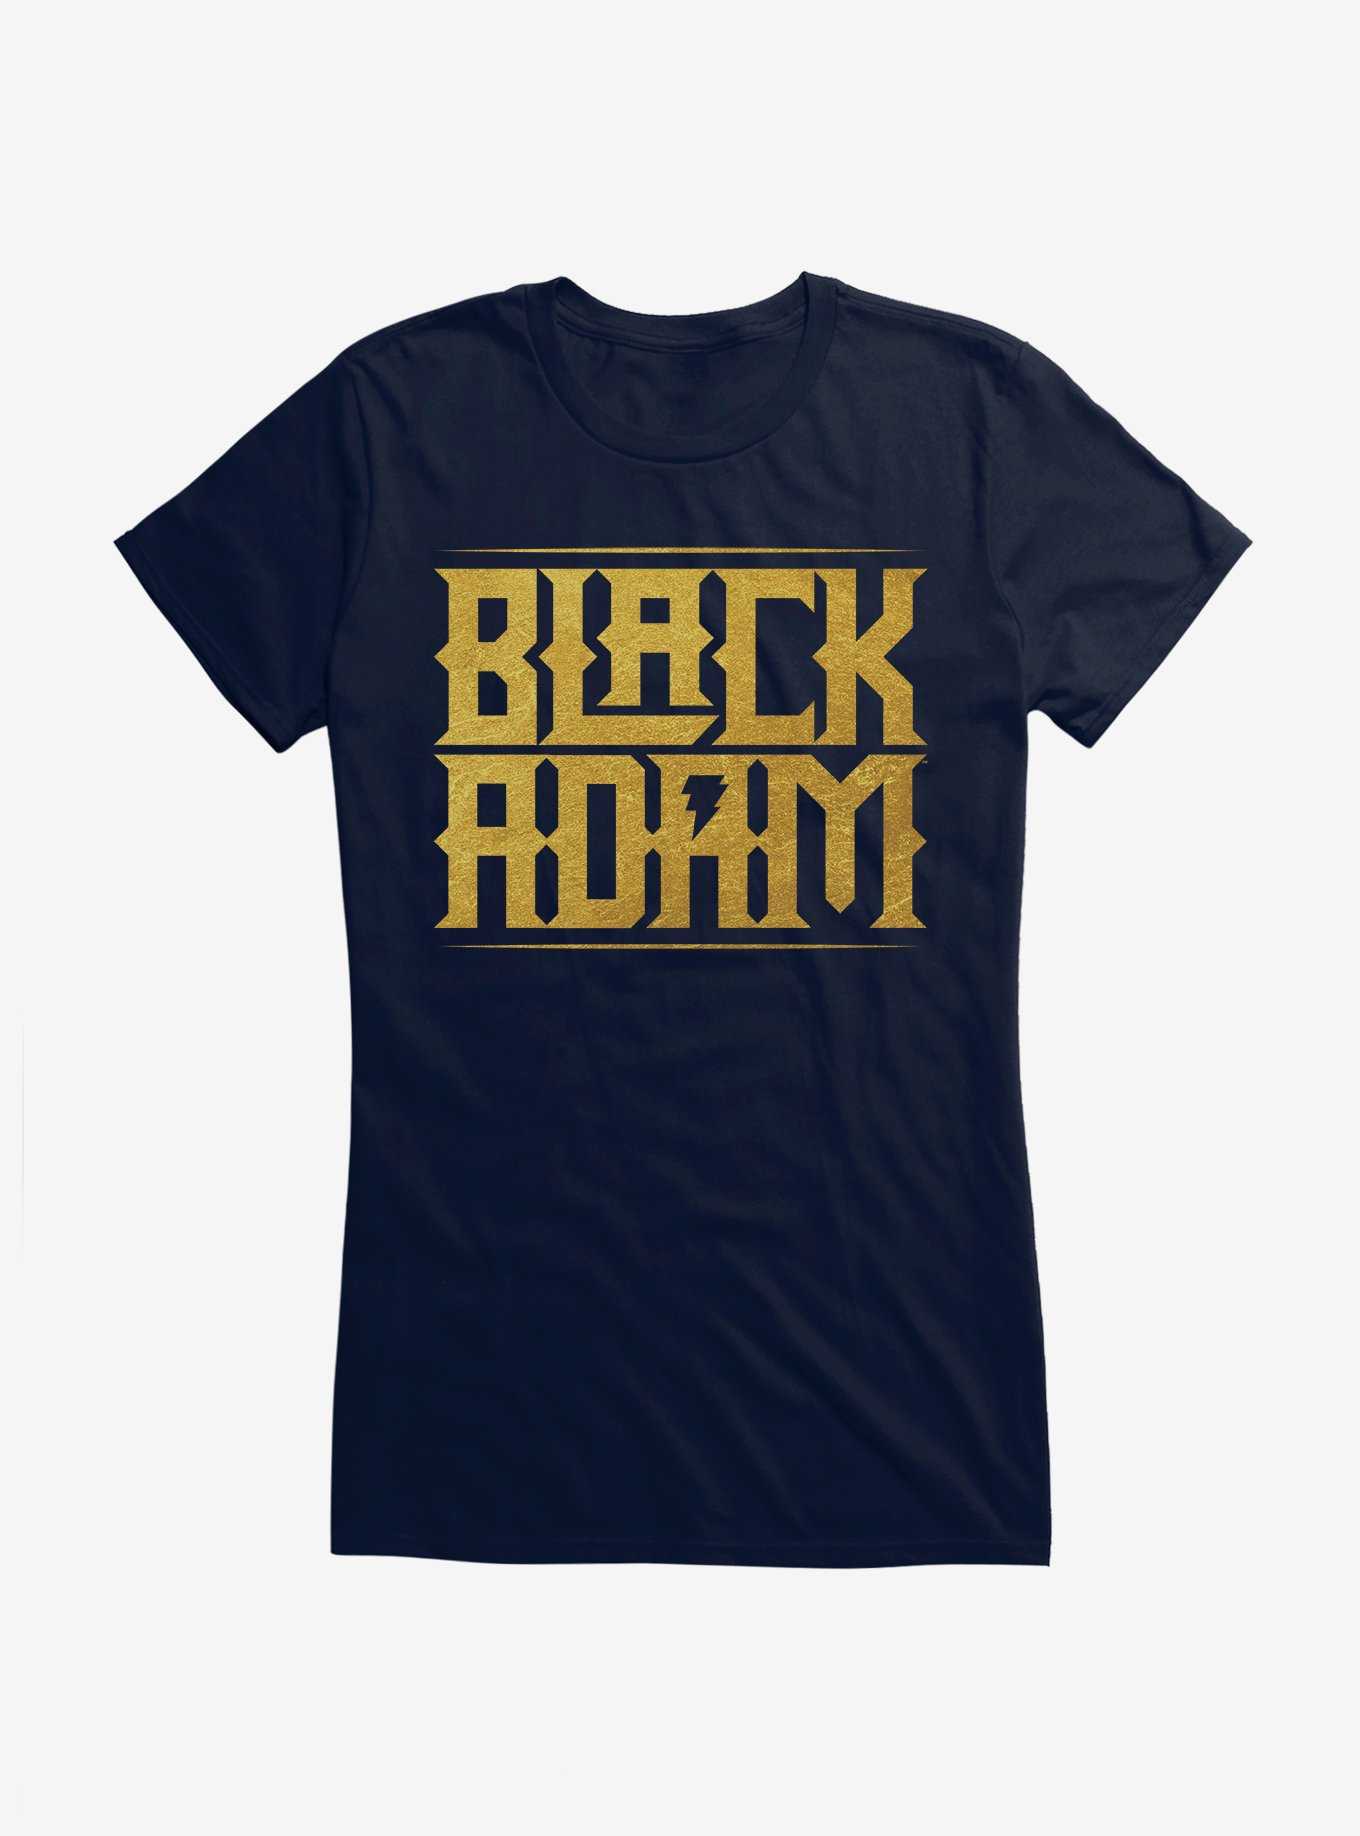 DC Comics Black Adam Logo Girls T-Shirt, , hi-res